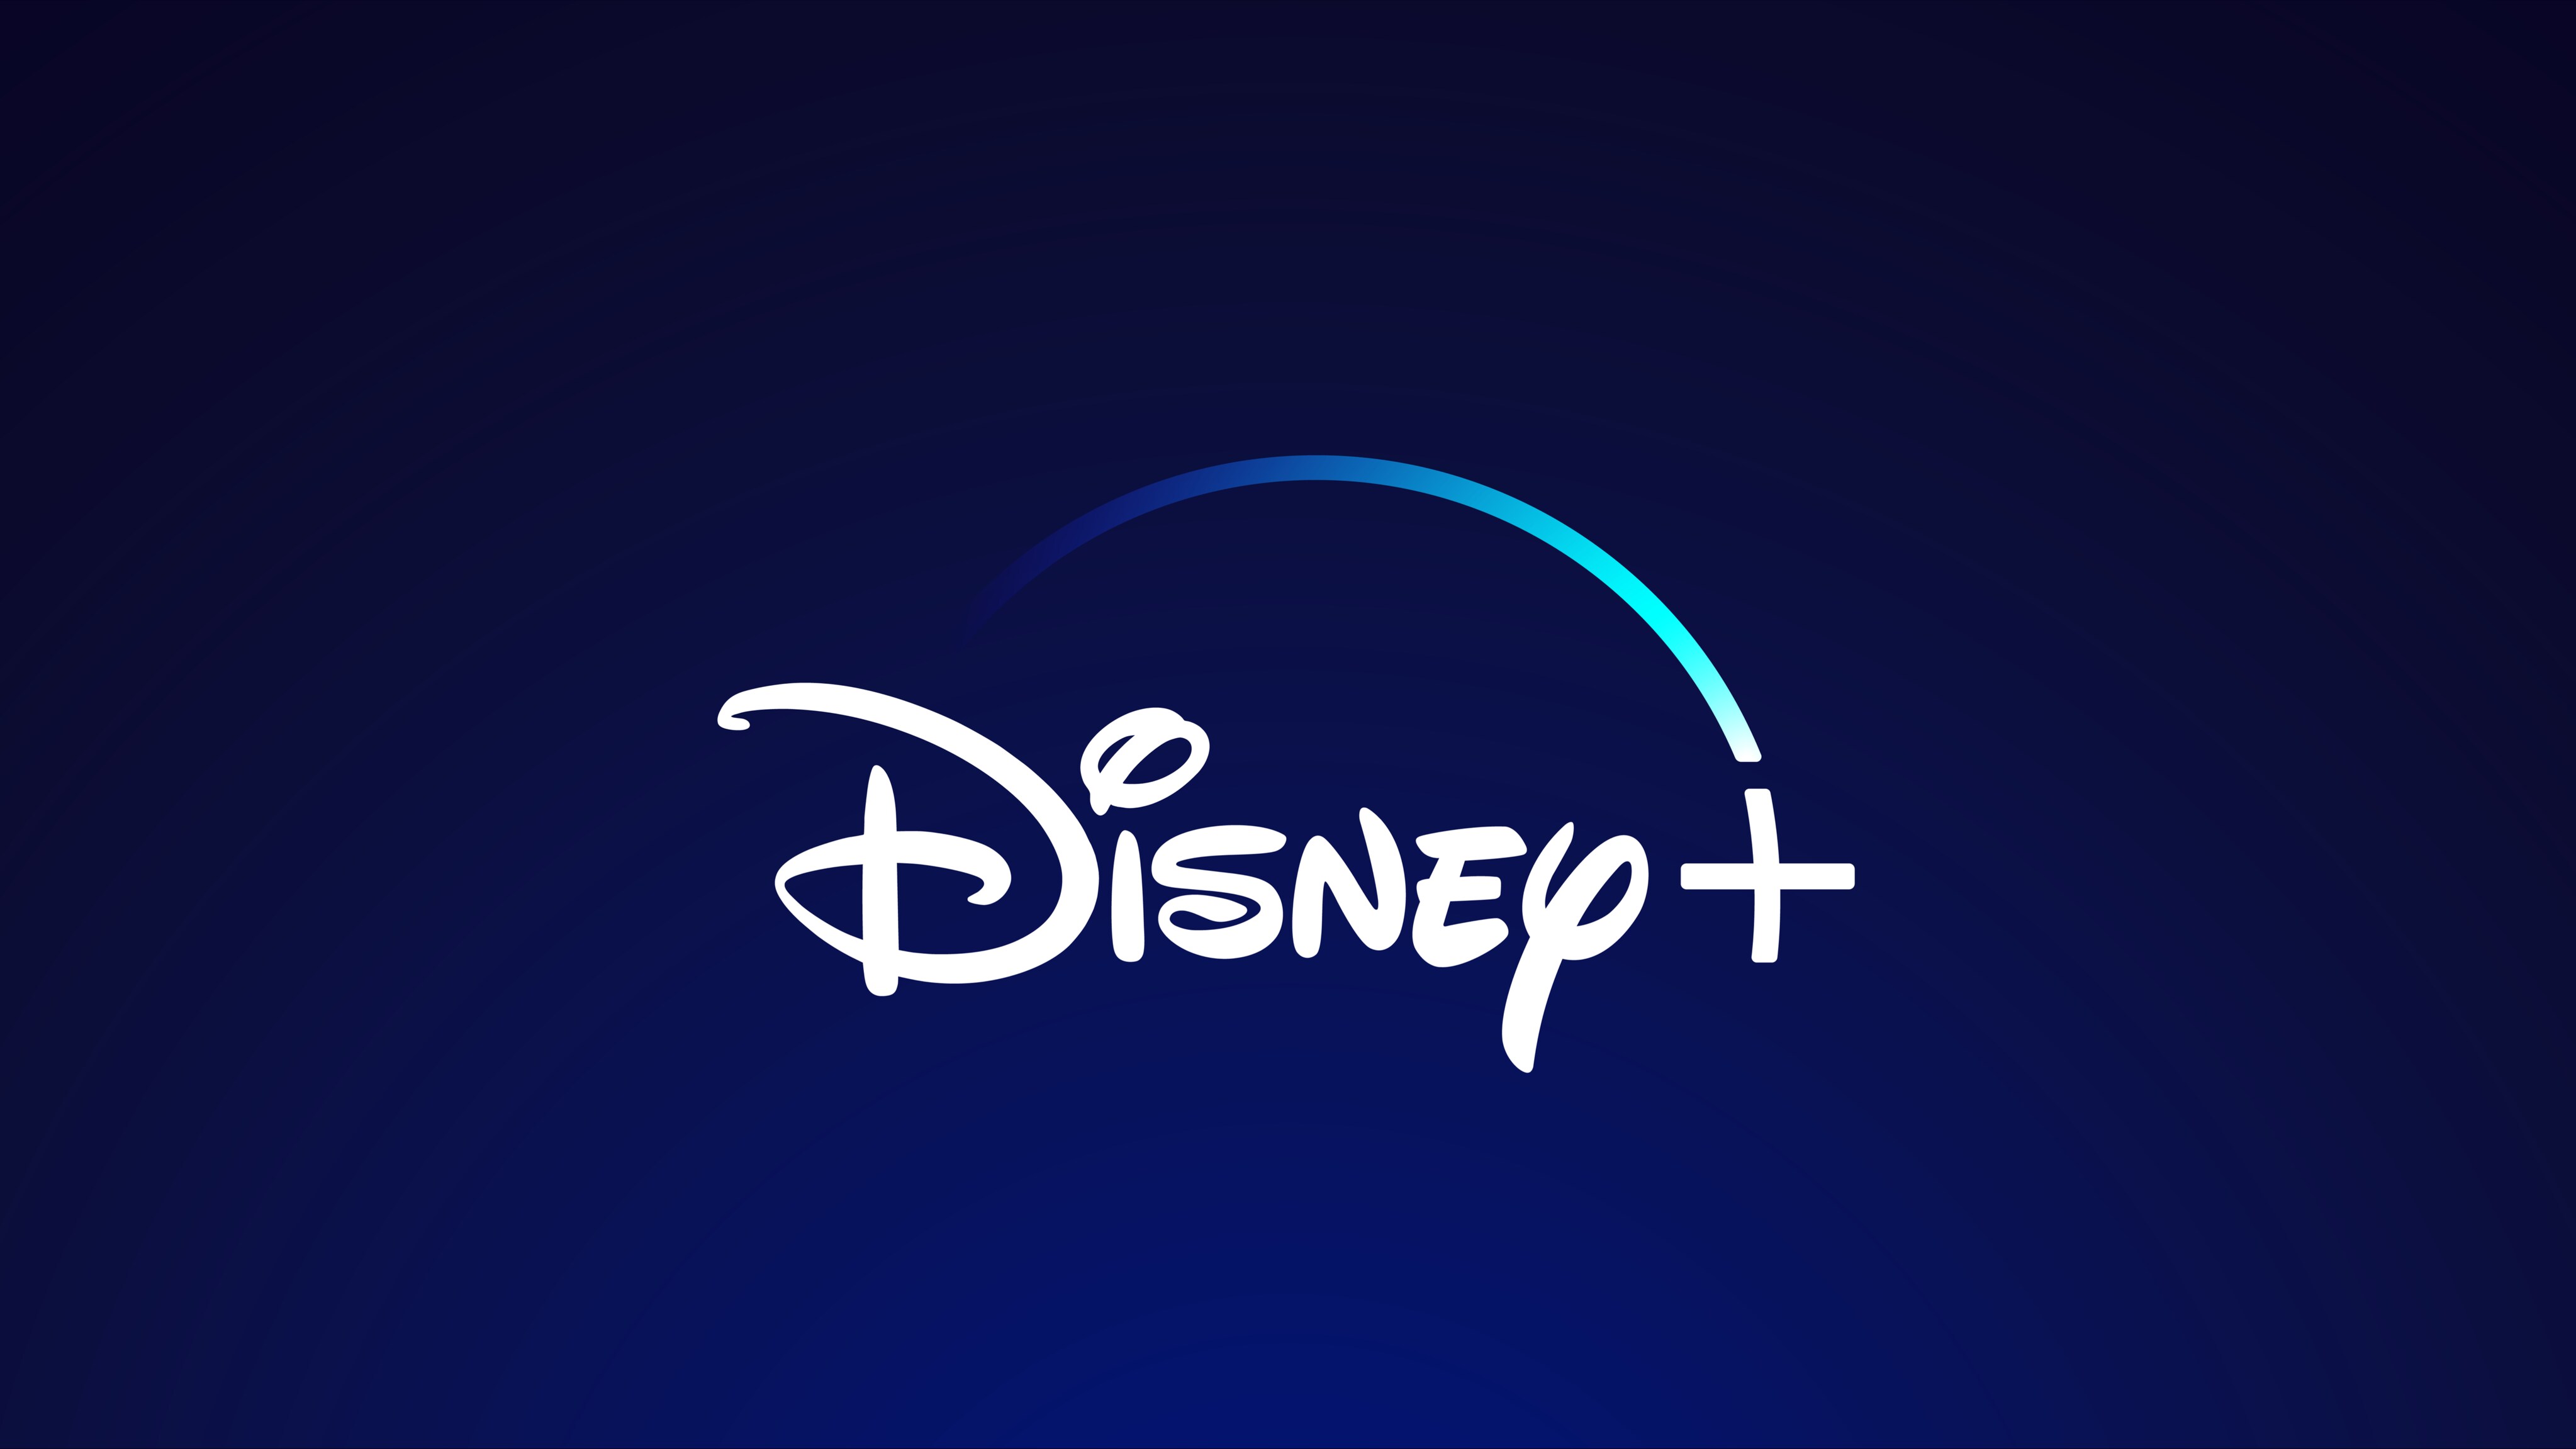 Disney Lilo & Stitch Not Today Stitch V1 - Inspire Uplift